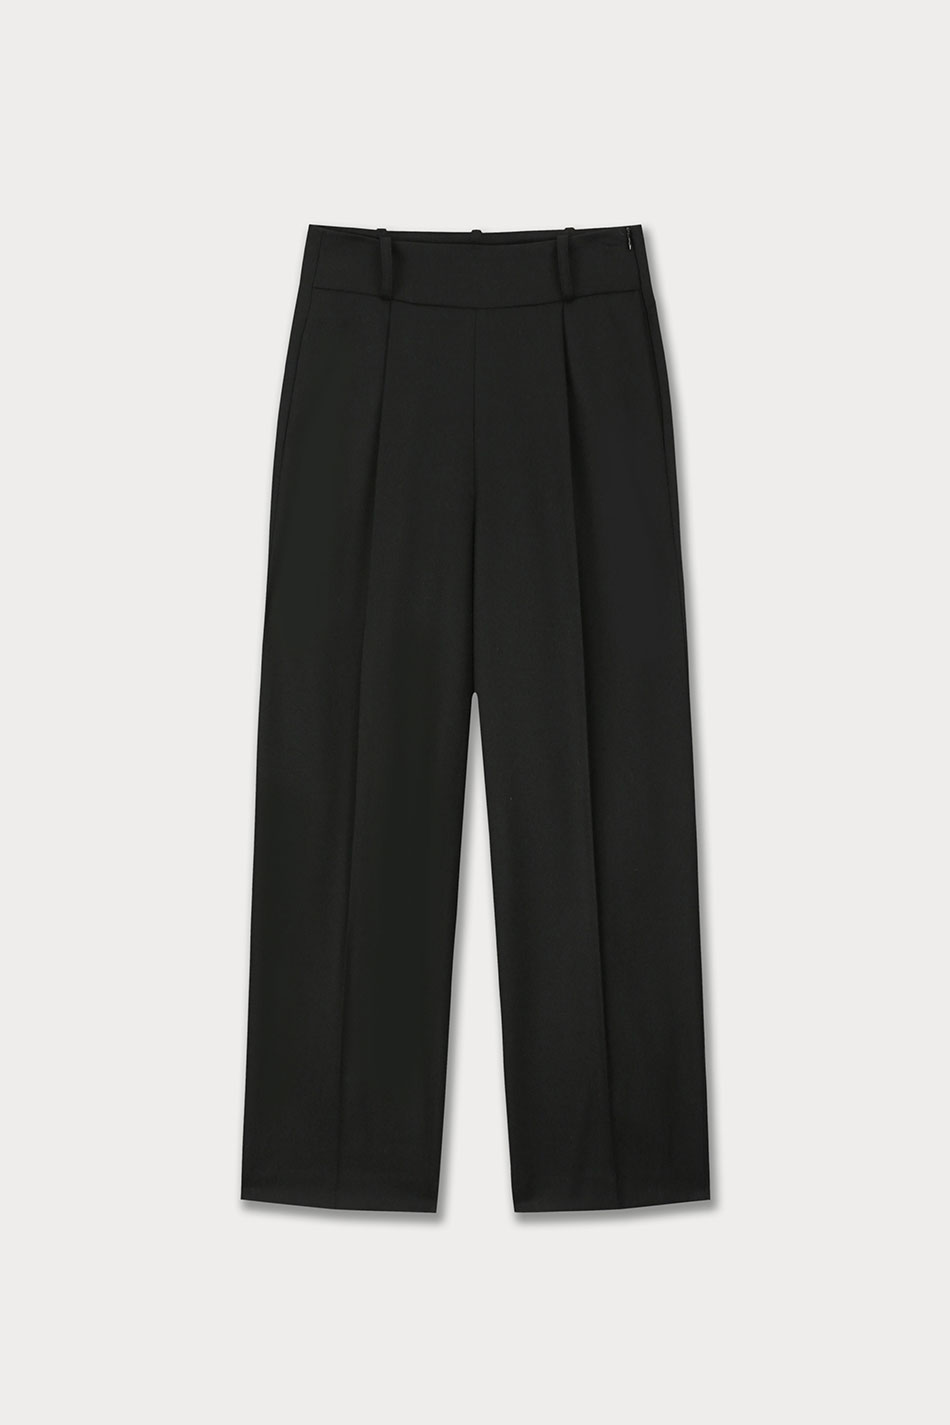 3rd / Marcela Wool Pants (Black)